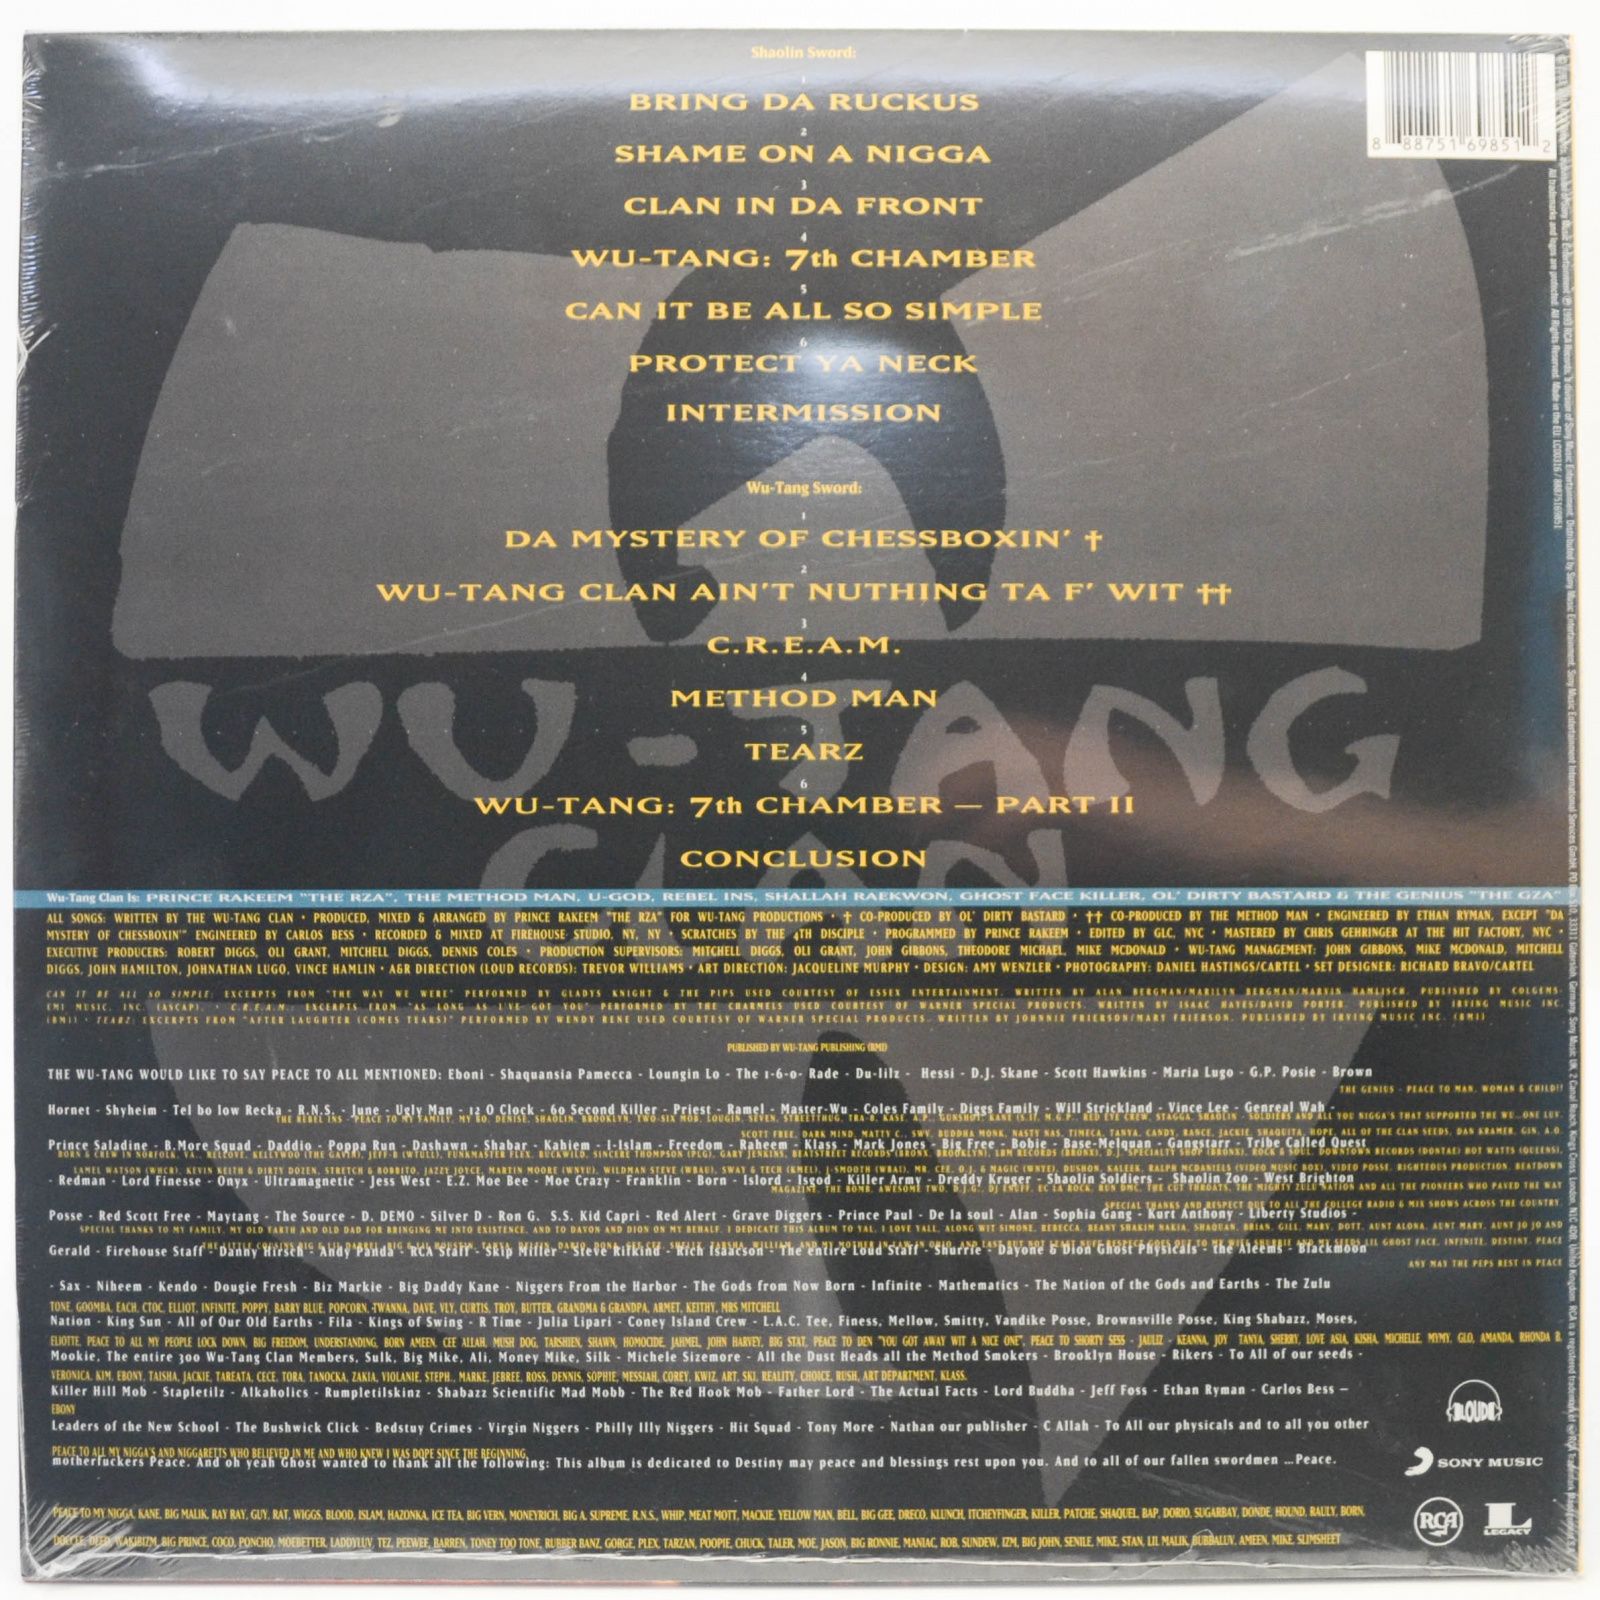 Wu-Tang Clan — Enter The Wu-Tang (36 Chambers), 1993